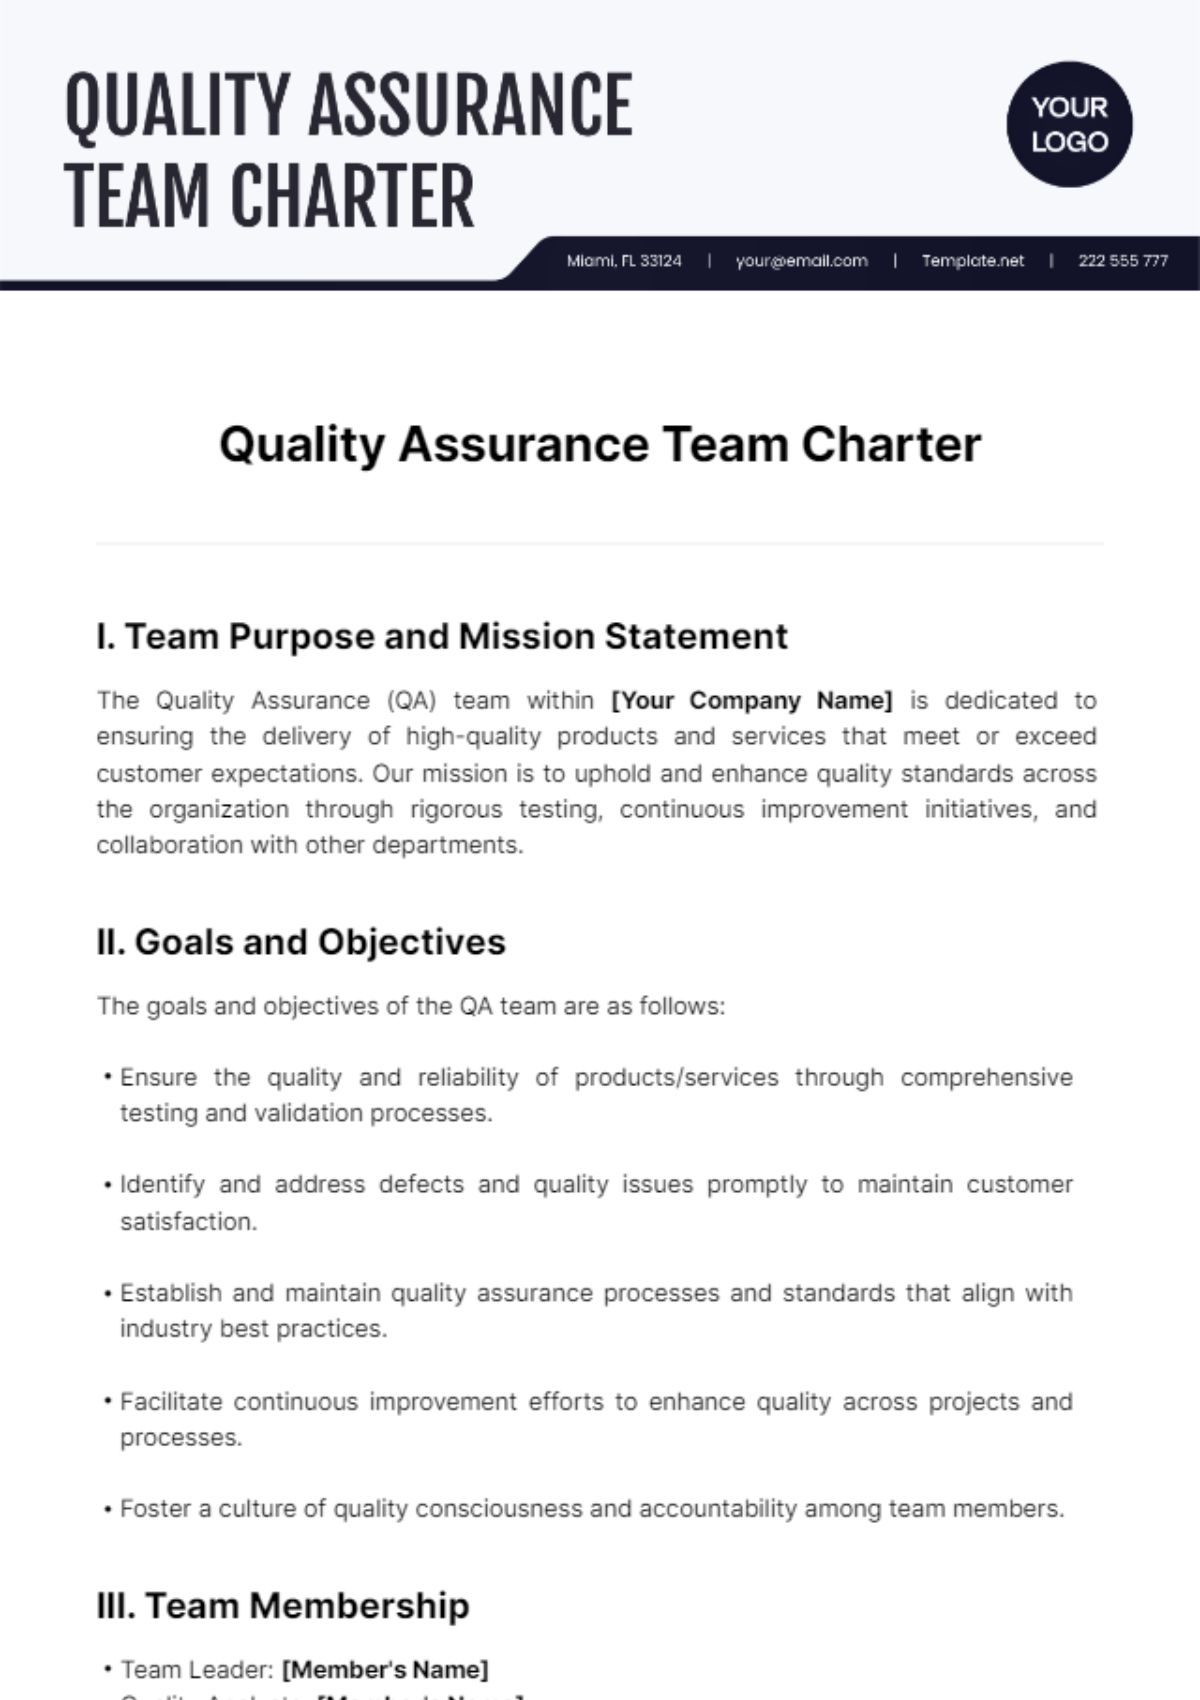 Quality Assurance Team Charter Template